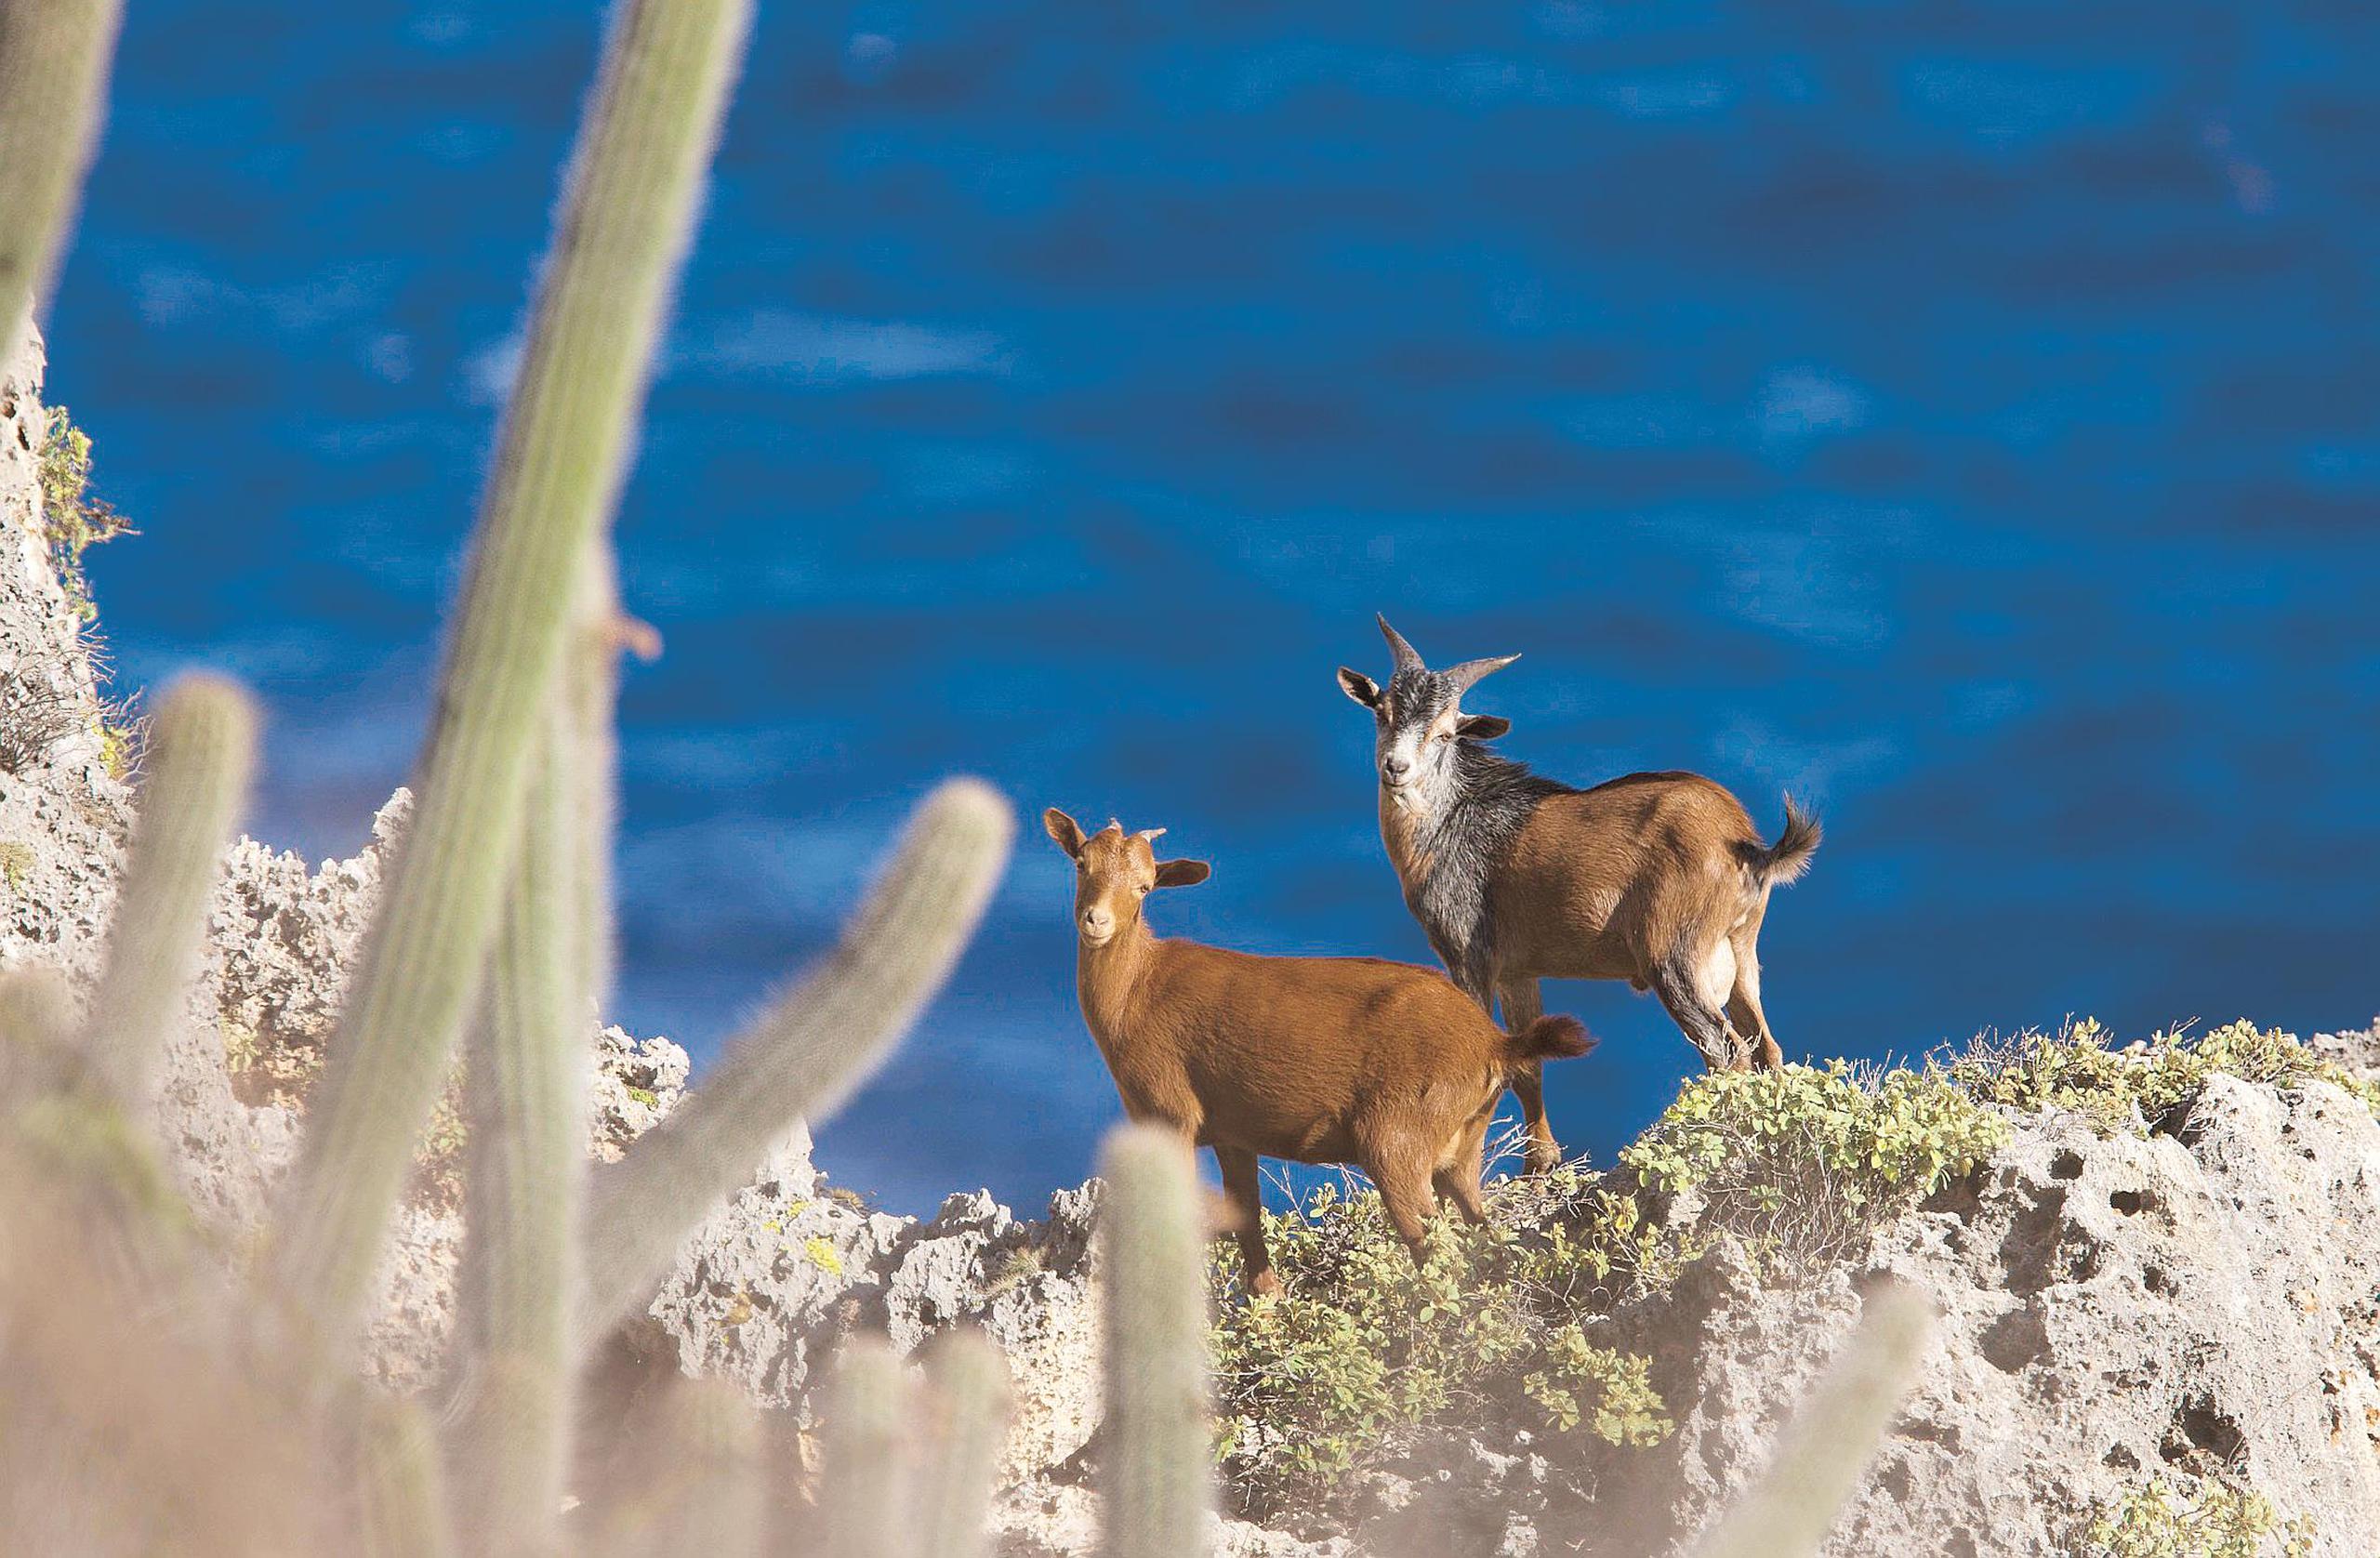 La Isla de Mona no solo es frecuentada por investigadores, sino también por cazadores que aprovechan las temporadas de caza de cerdos y cabras. (Archivo/GFR Media)